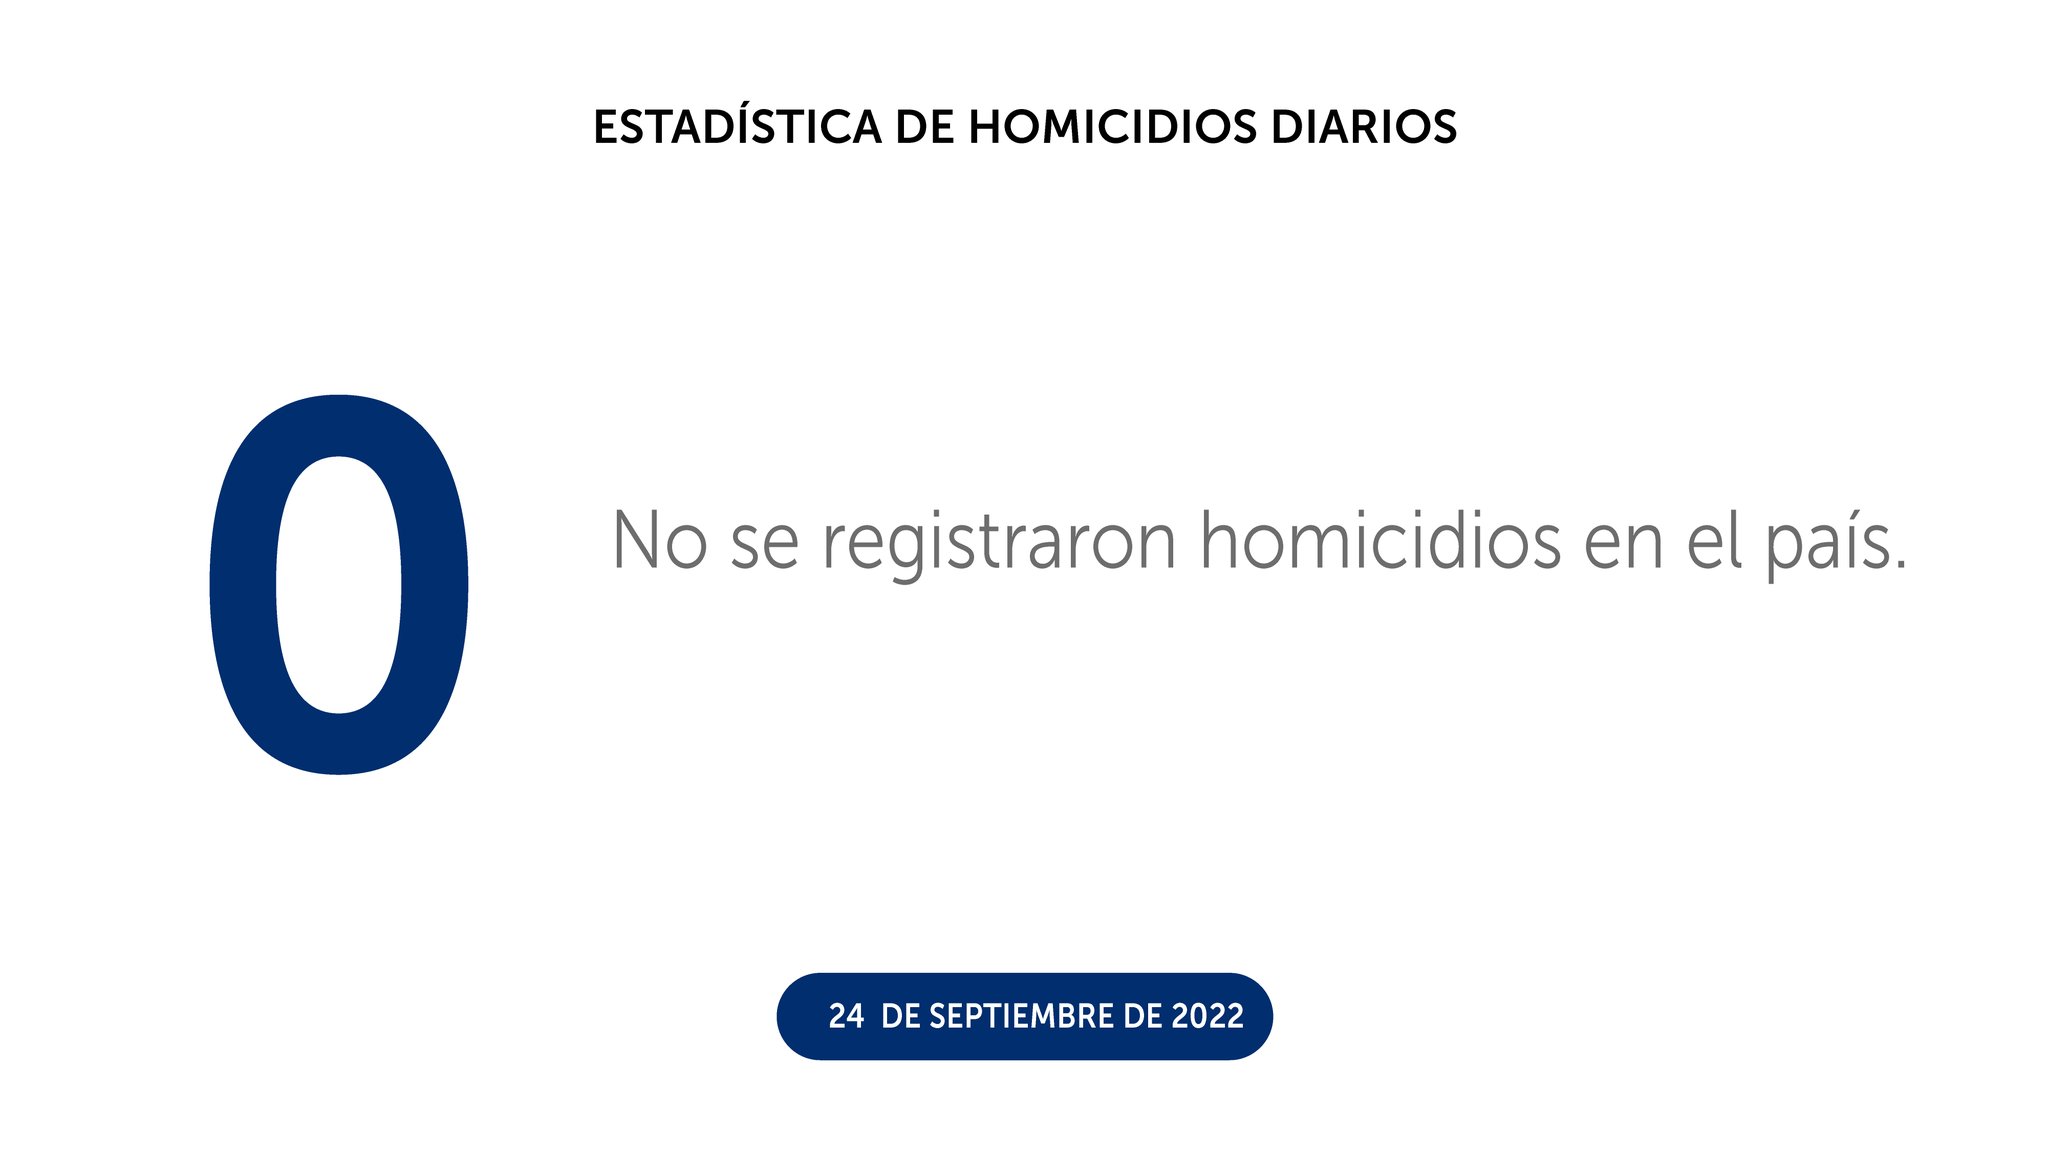 Sábado 24 de septiembre finalizó con 0 homicidios en el país